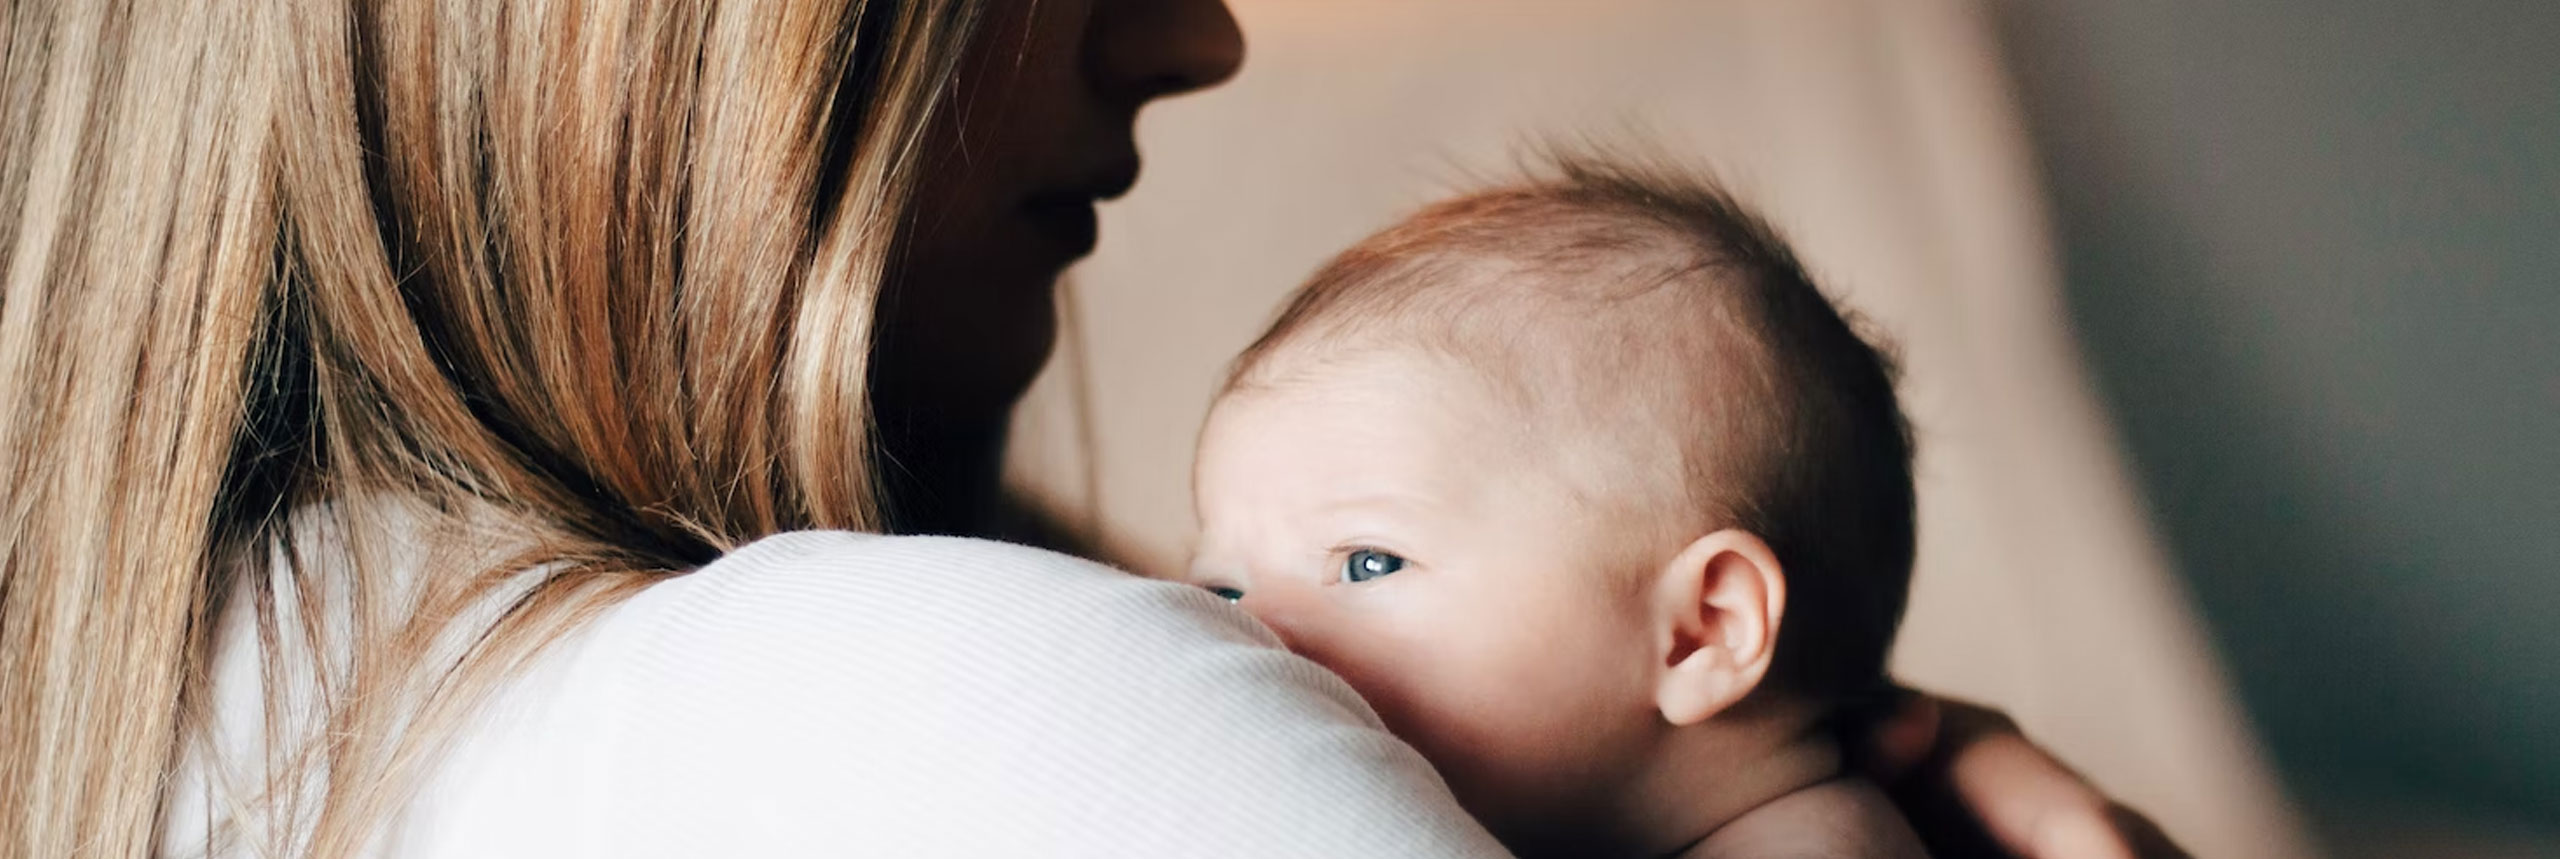 Quoi offrir à une nouvelle maman? 8 idées cadeaux pour une jeune